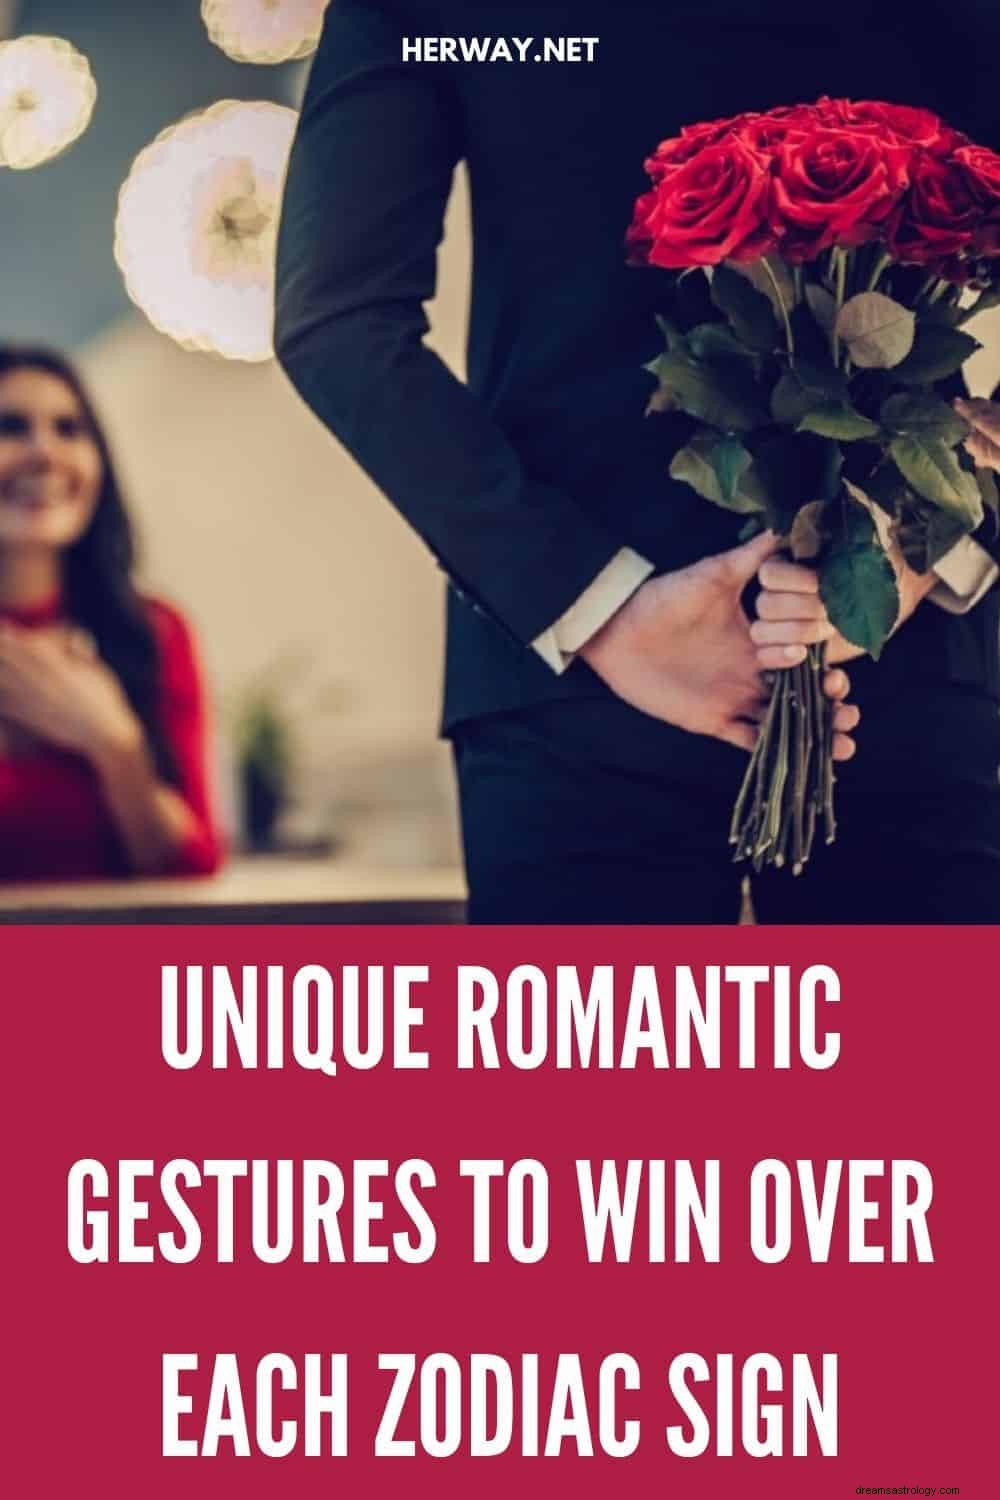 Des gestes romantiques uniques pour conquérir chaque signe du zodiaque